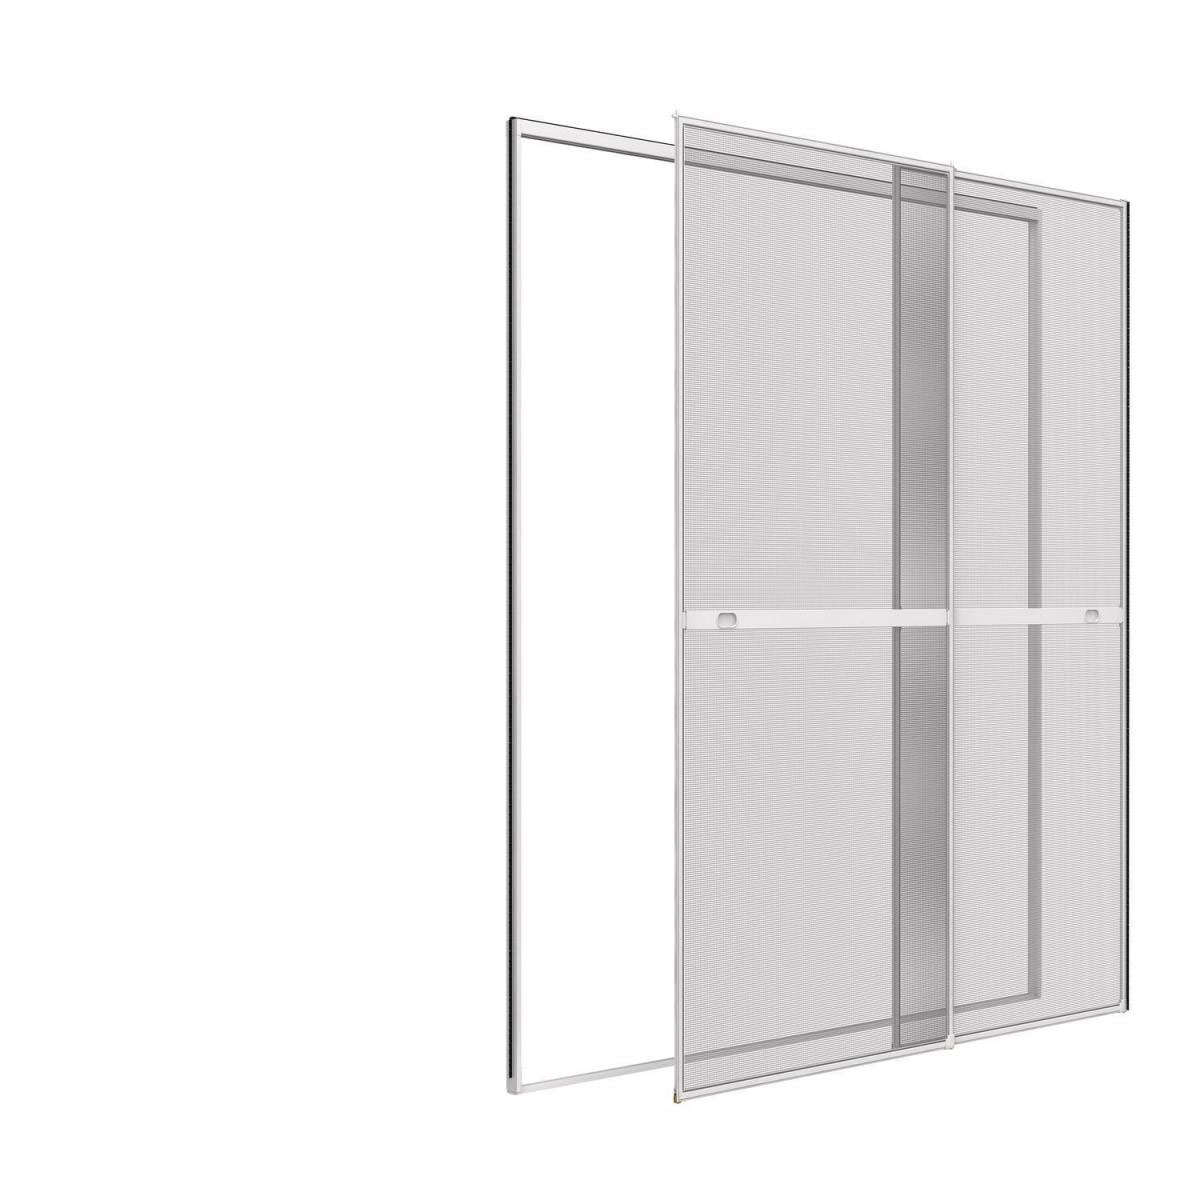 Insektenschutz-Doppelschiebetür, 230x240 cm, weiß